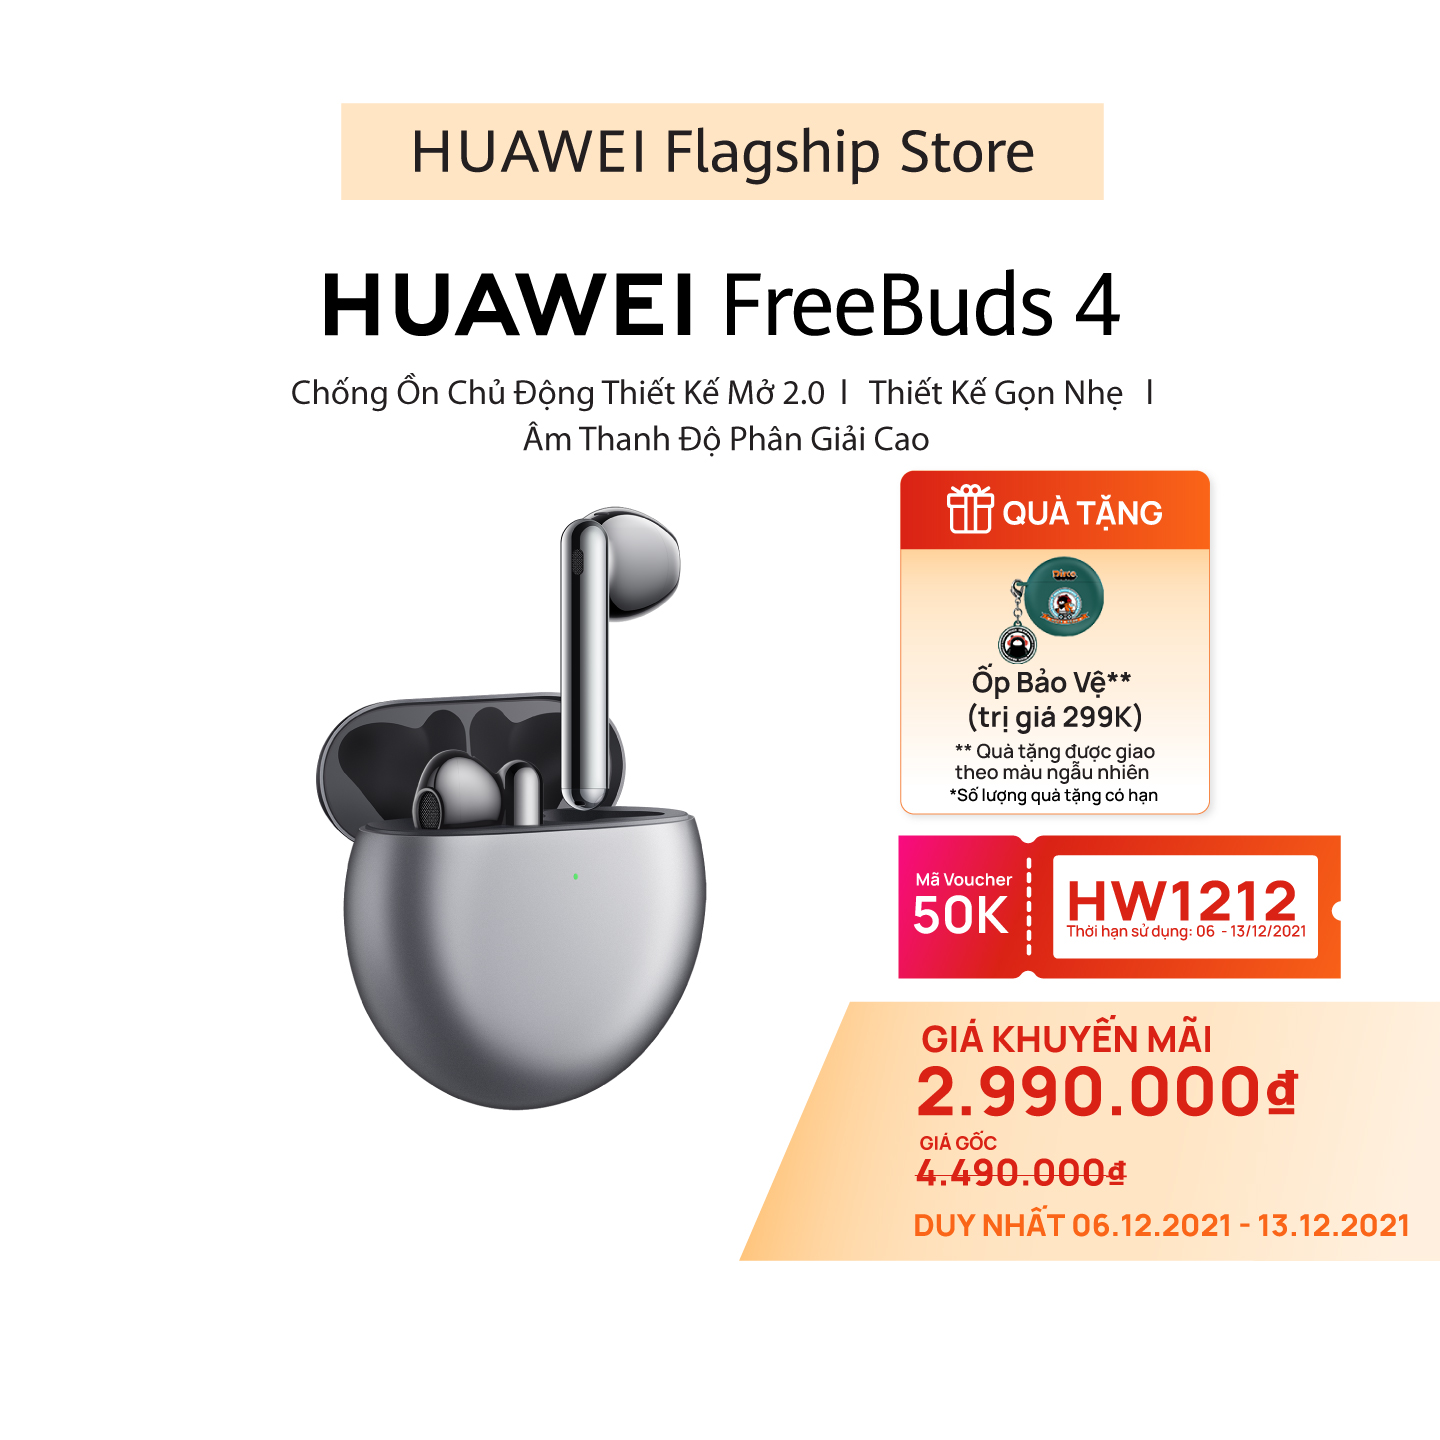 Tai Nghe Bluetooth HUAWEI FreeBuds 4 | Chống Ồn Chủ Động Thiết Kế Mở 2.0 | Thiết Kế Gọn Nhẹ | Âm Thanh Độ Phân Giải Cao | Hàng Chính Hãng